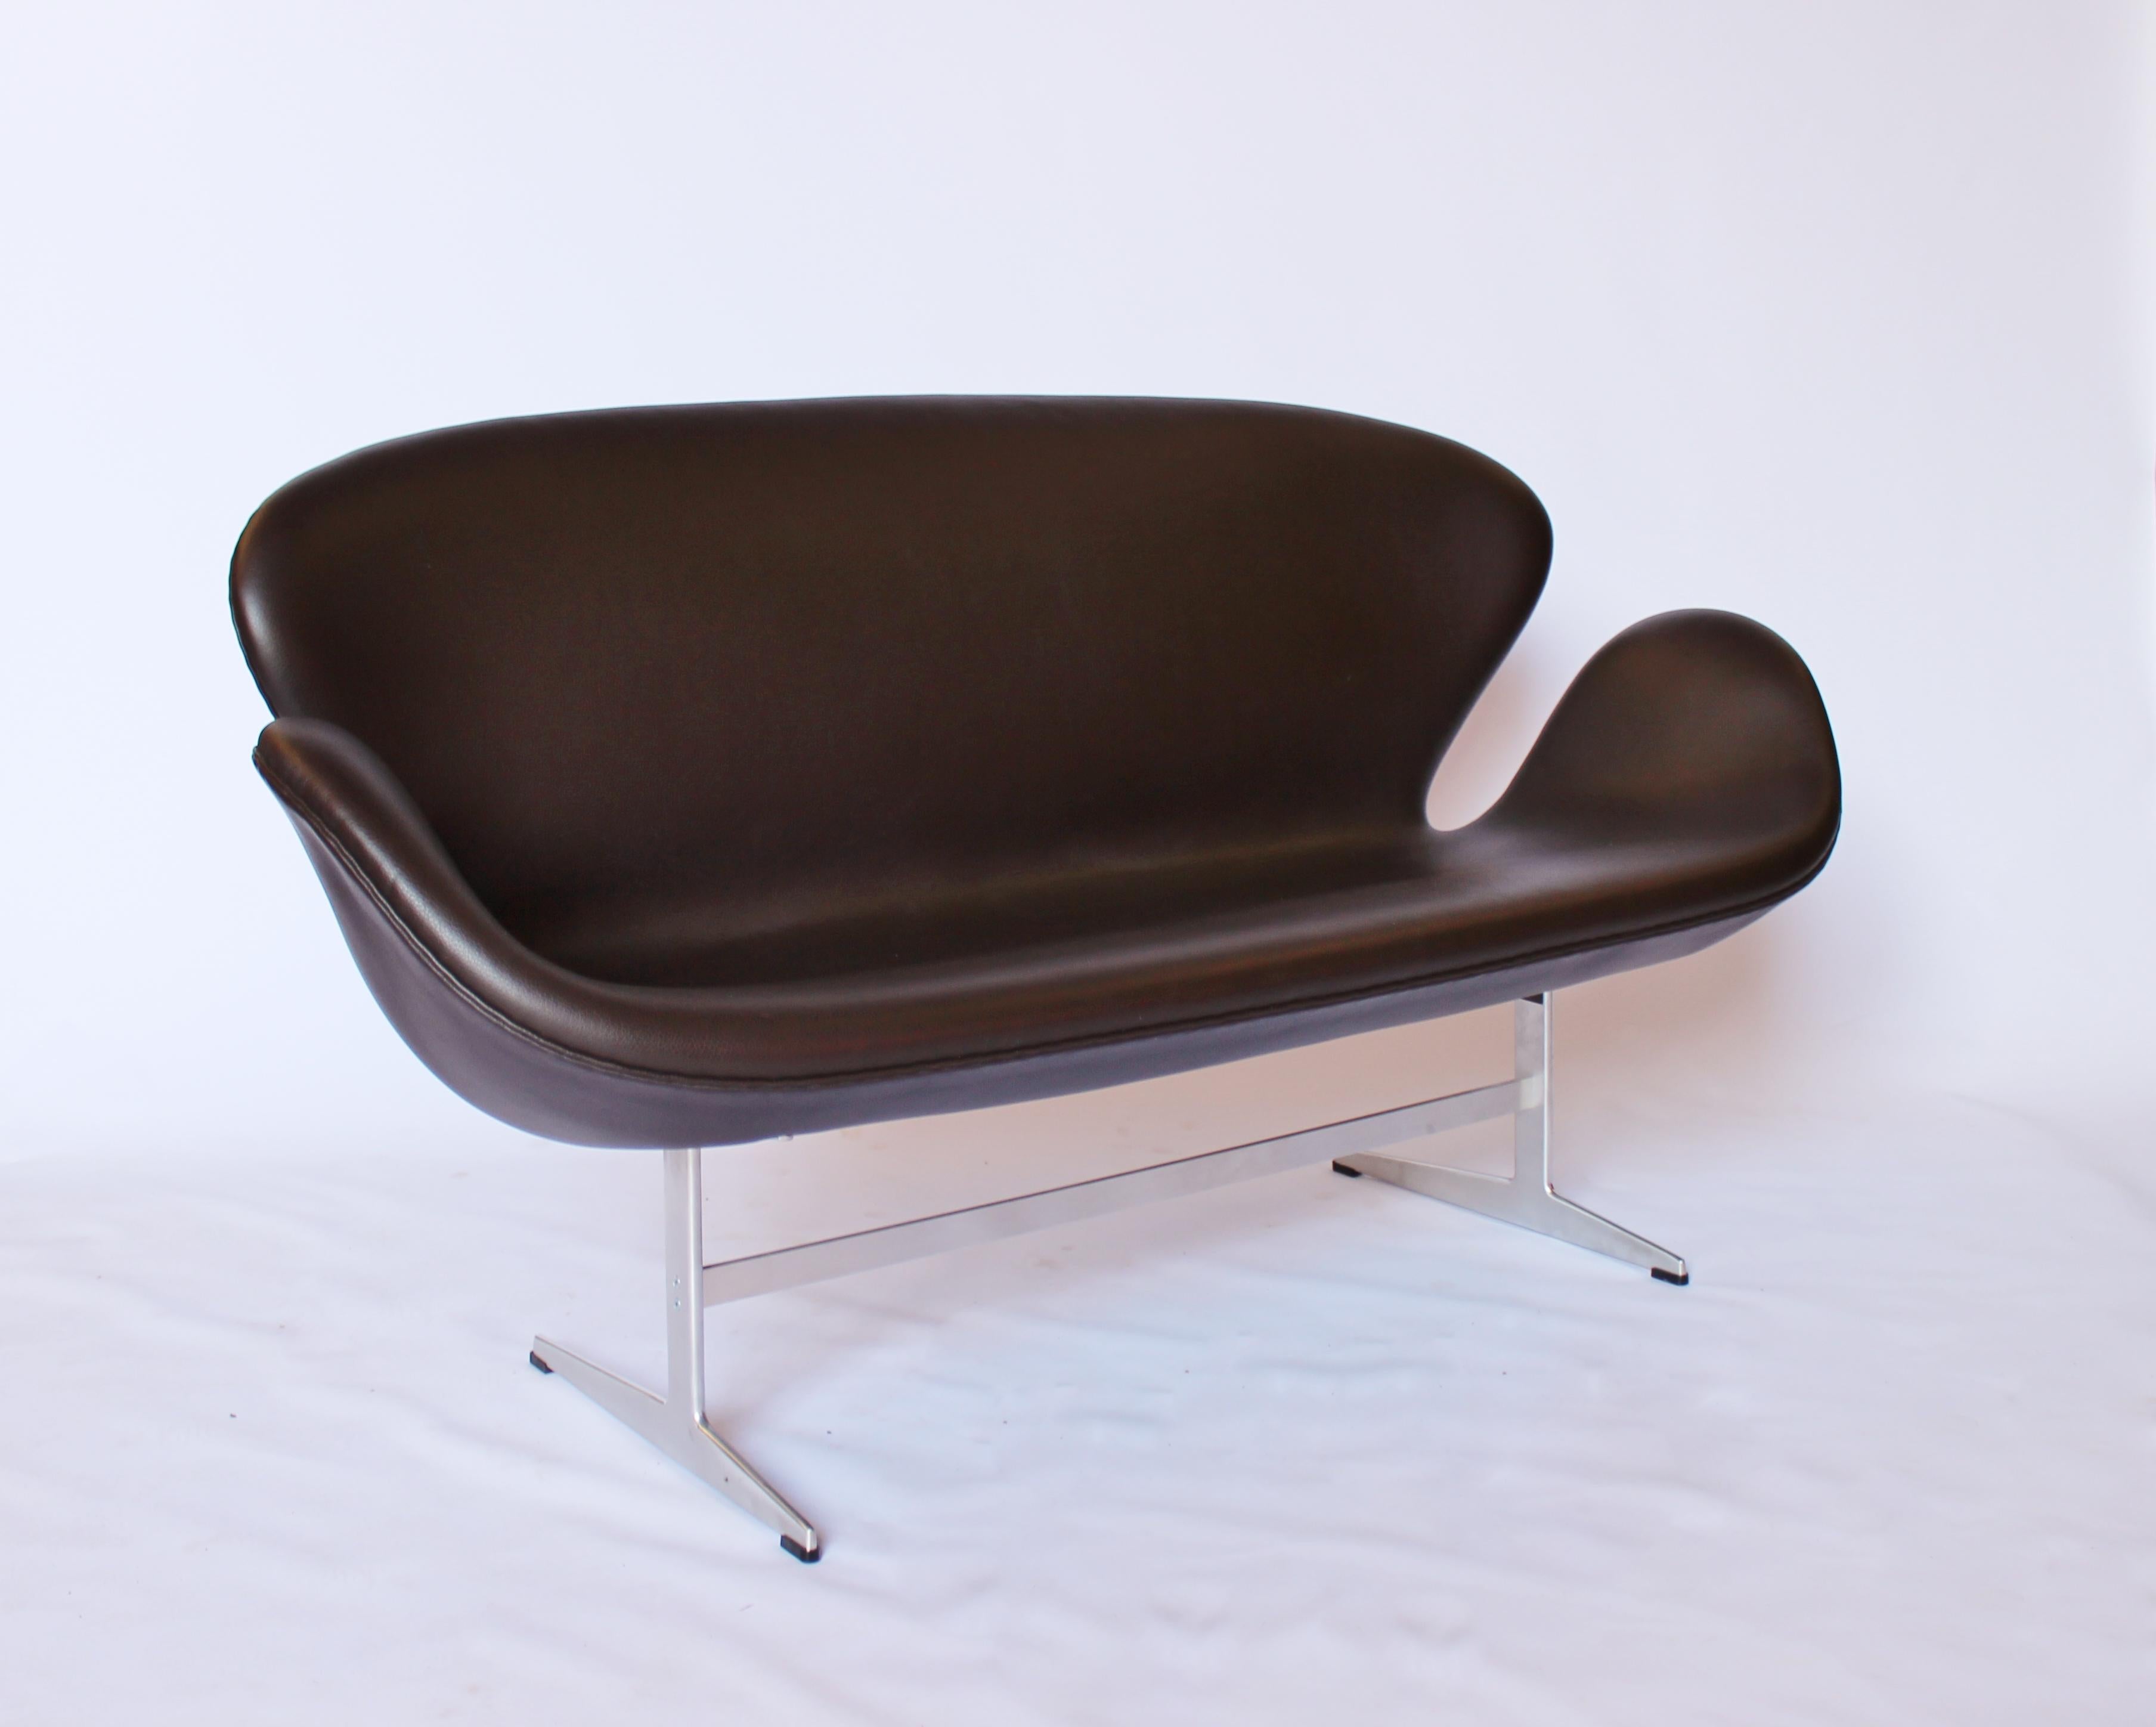 Das Swan Sofa, Modell 3321, ist ein zweisitziges Sofa, das der dänische Architekt und Designer Arne Jacobsen in den 1960er Jahren entworfen hat. Das elegante und geschwungene Design erinnert an die Form eines Schwans und ist zu einer Ikone der